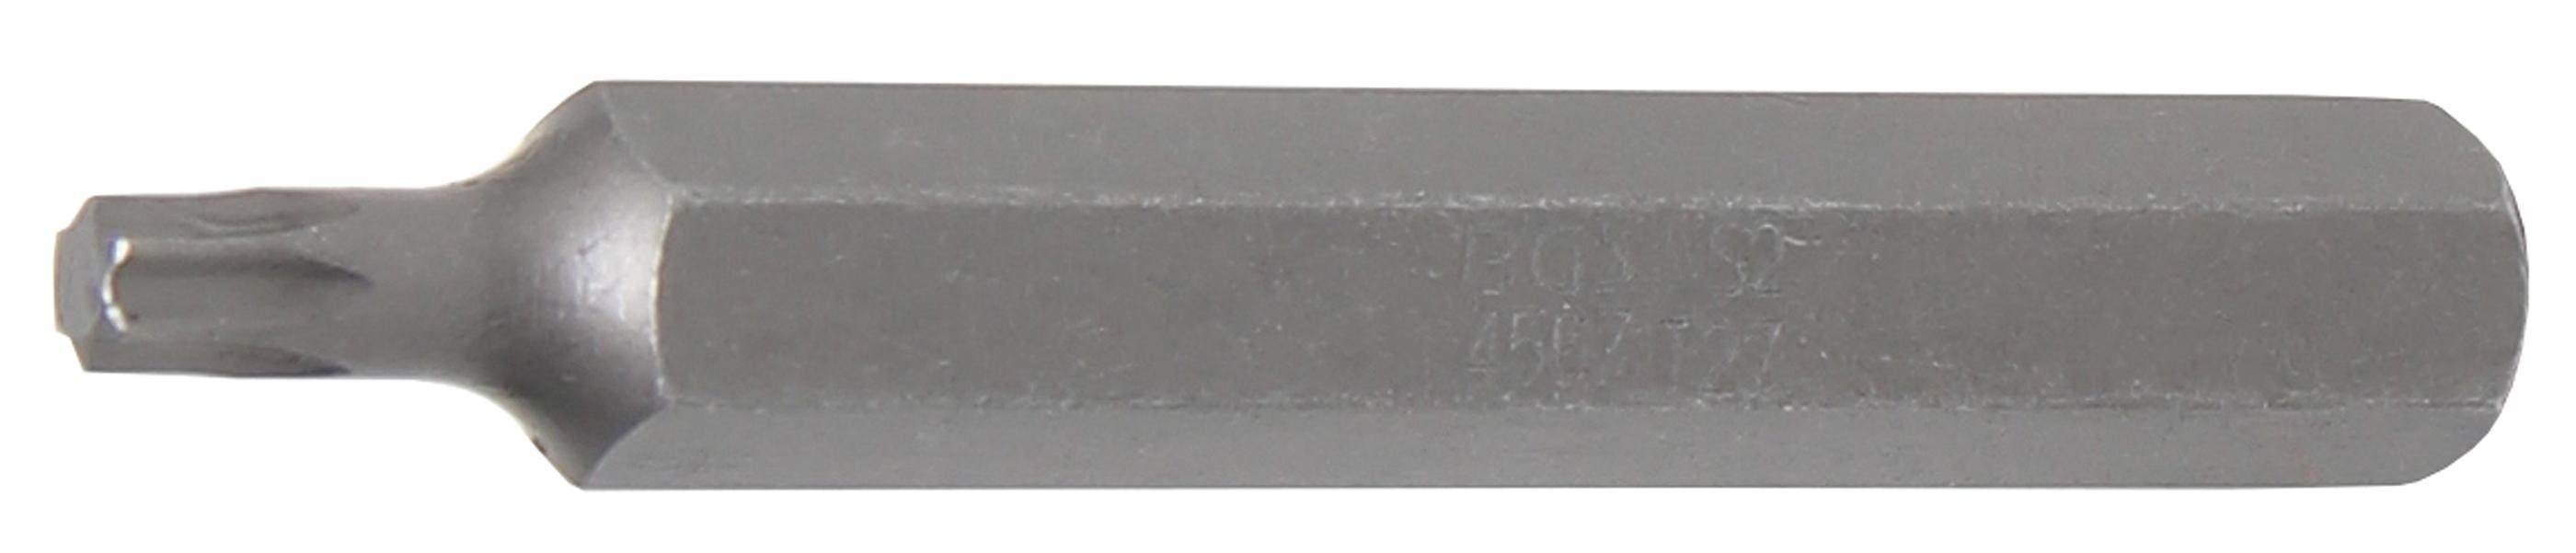 BGS technic Bit-Schraubendreher Bit, Länge 75 mm, Antrieb Außensechskant 10 mm (3/8), T-Profil (für Torx) T27